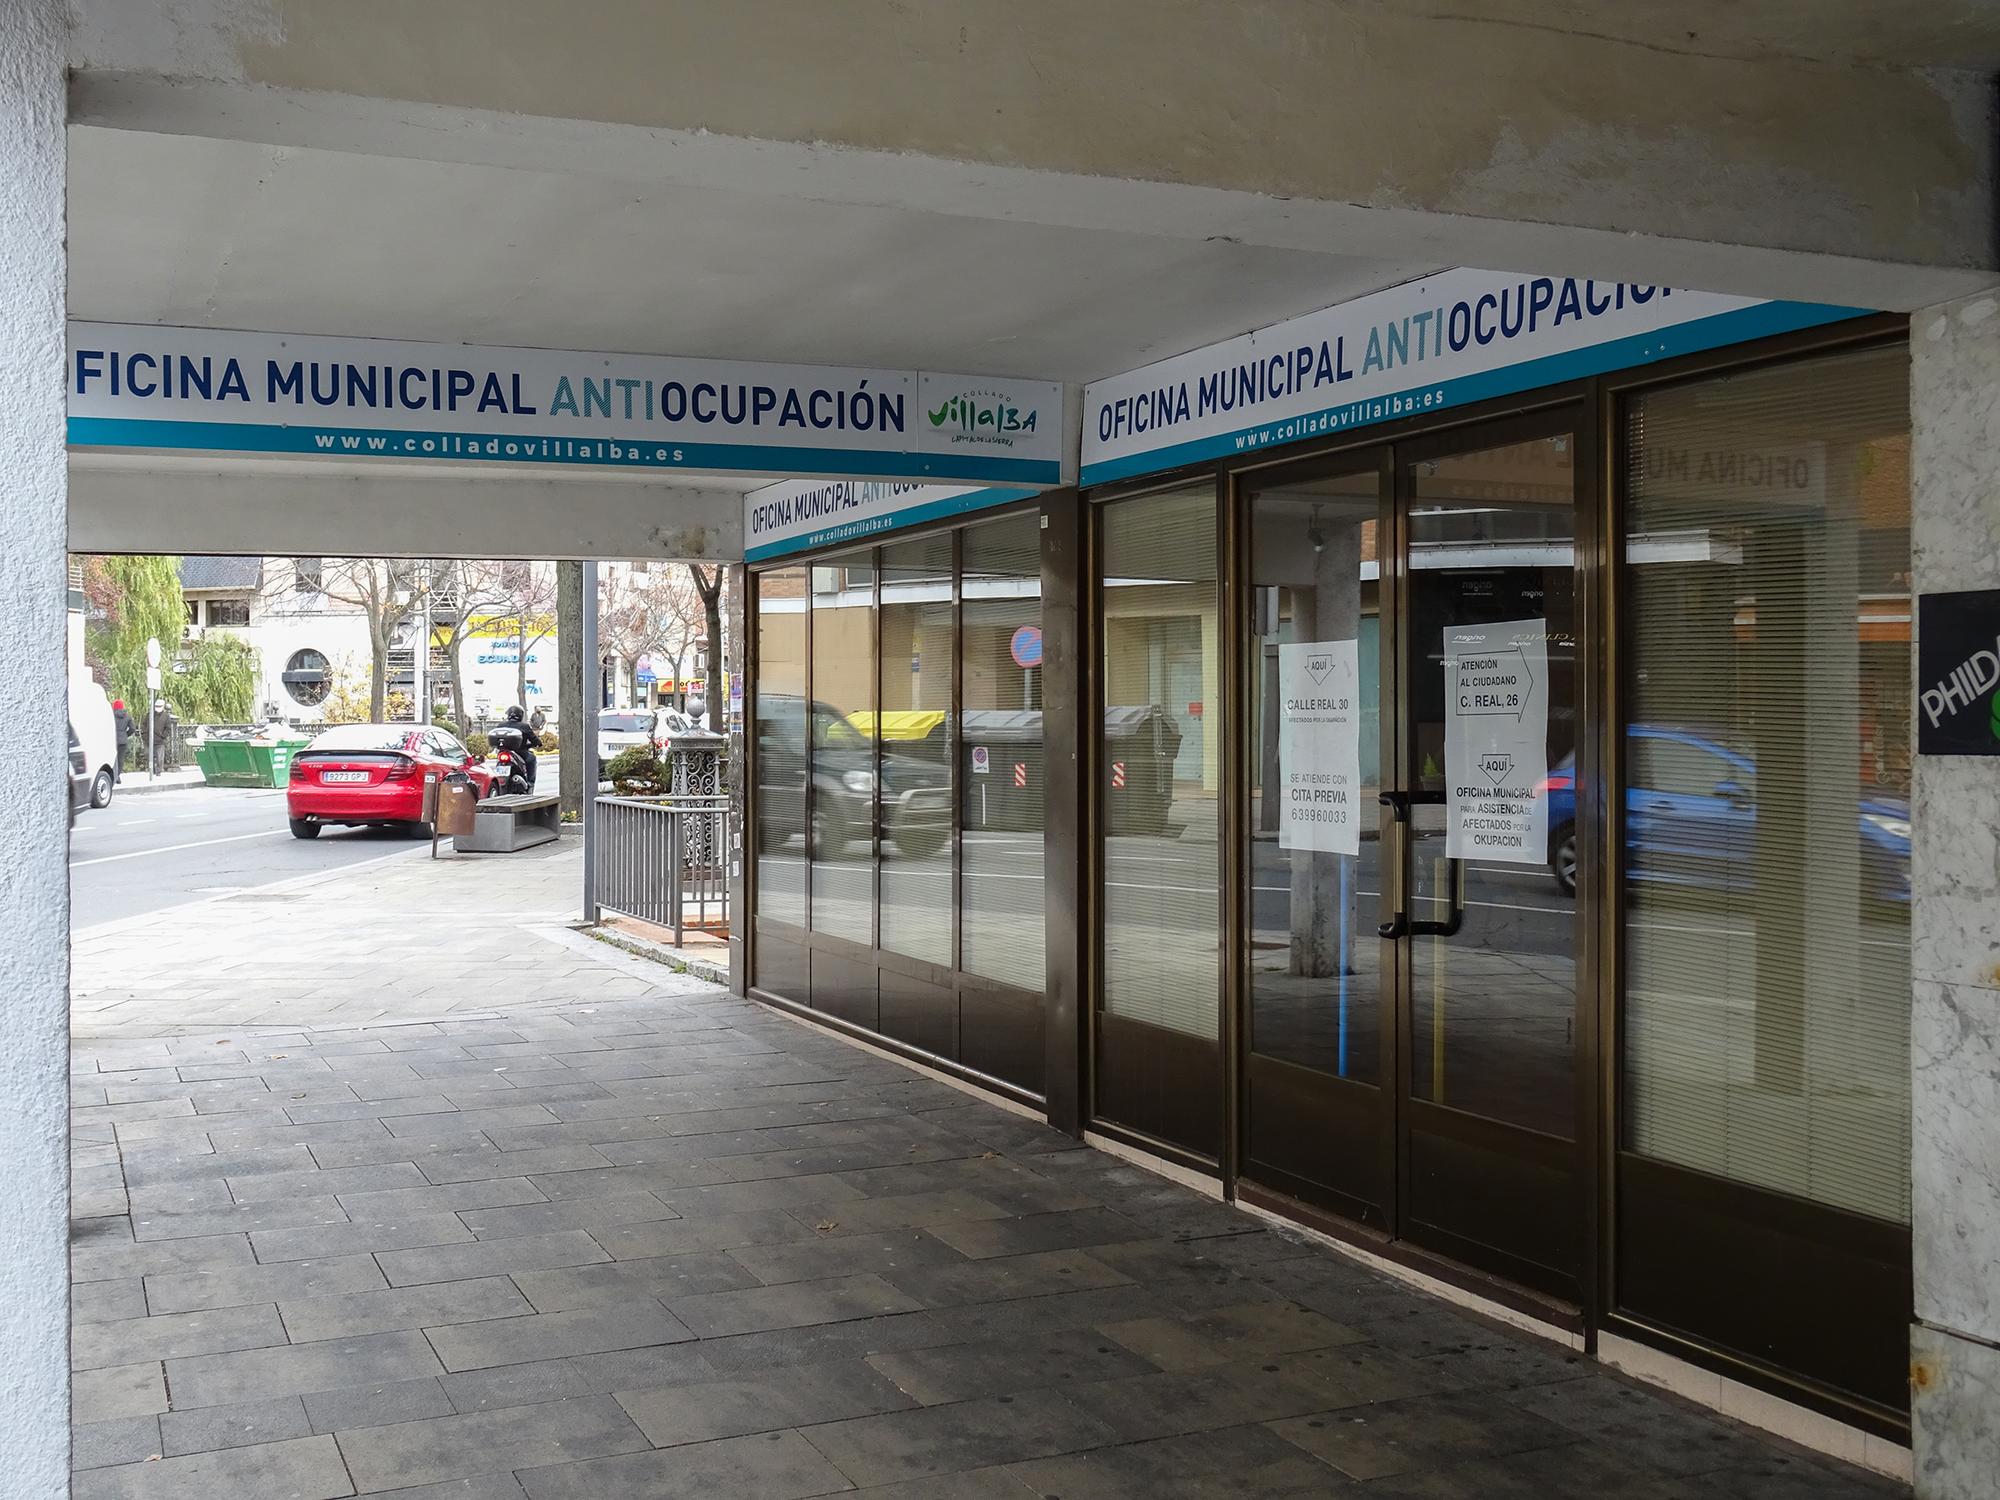 Oficina municipal antiocupación Collado Villalba